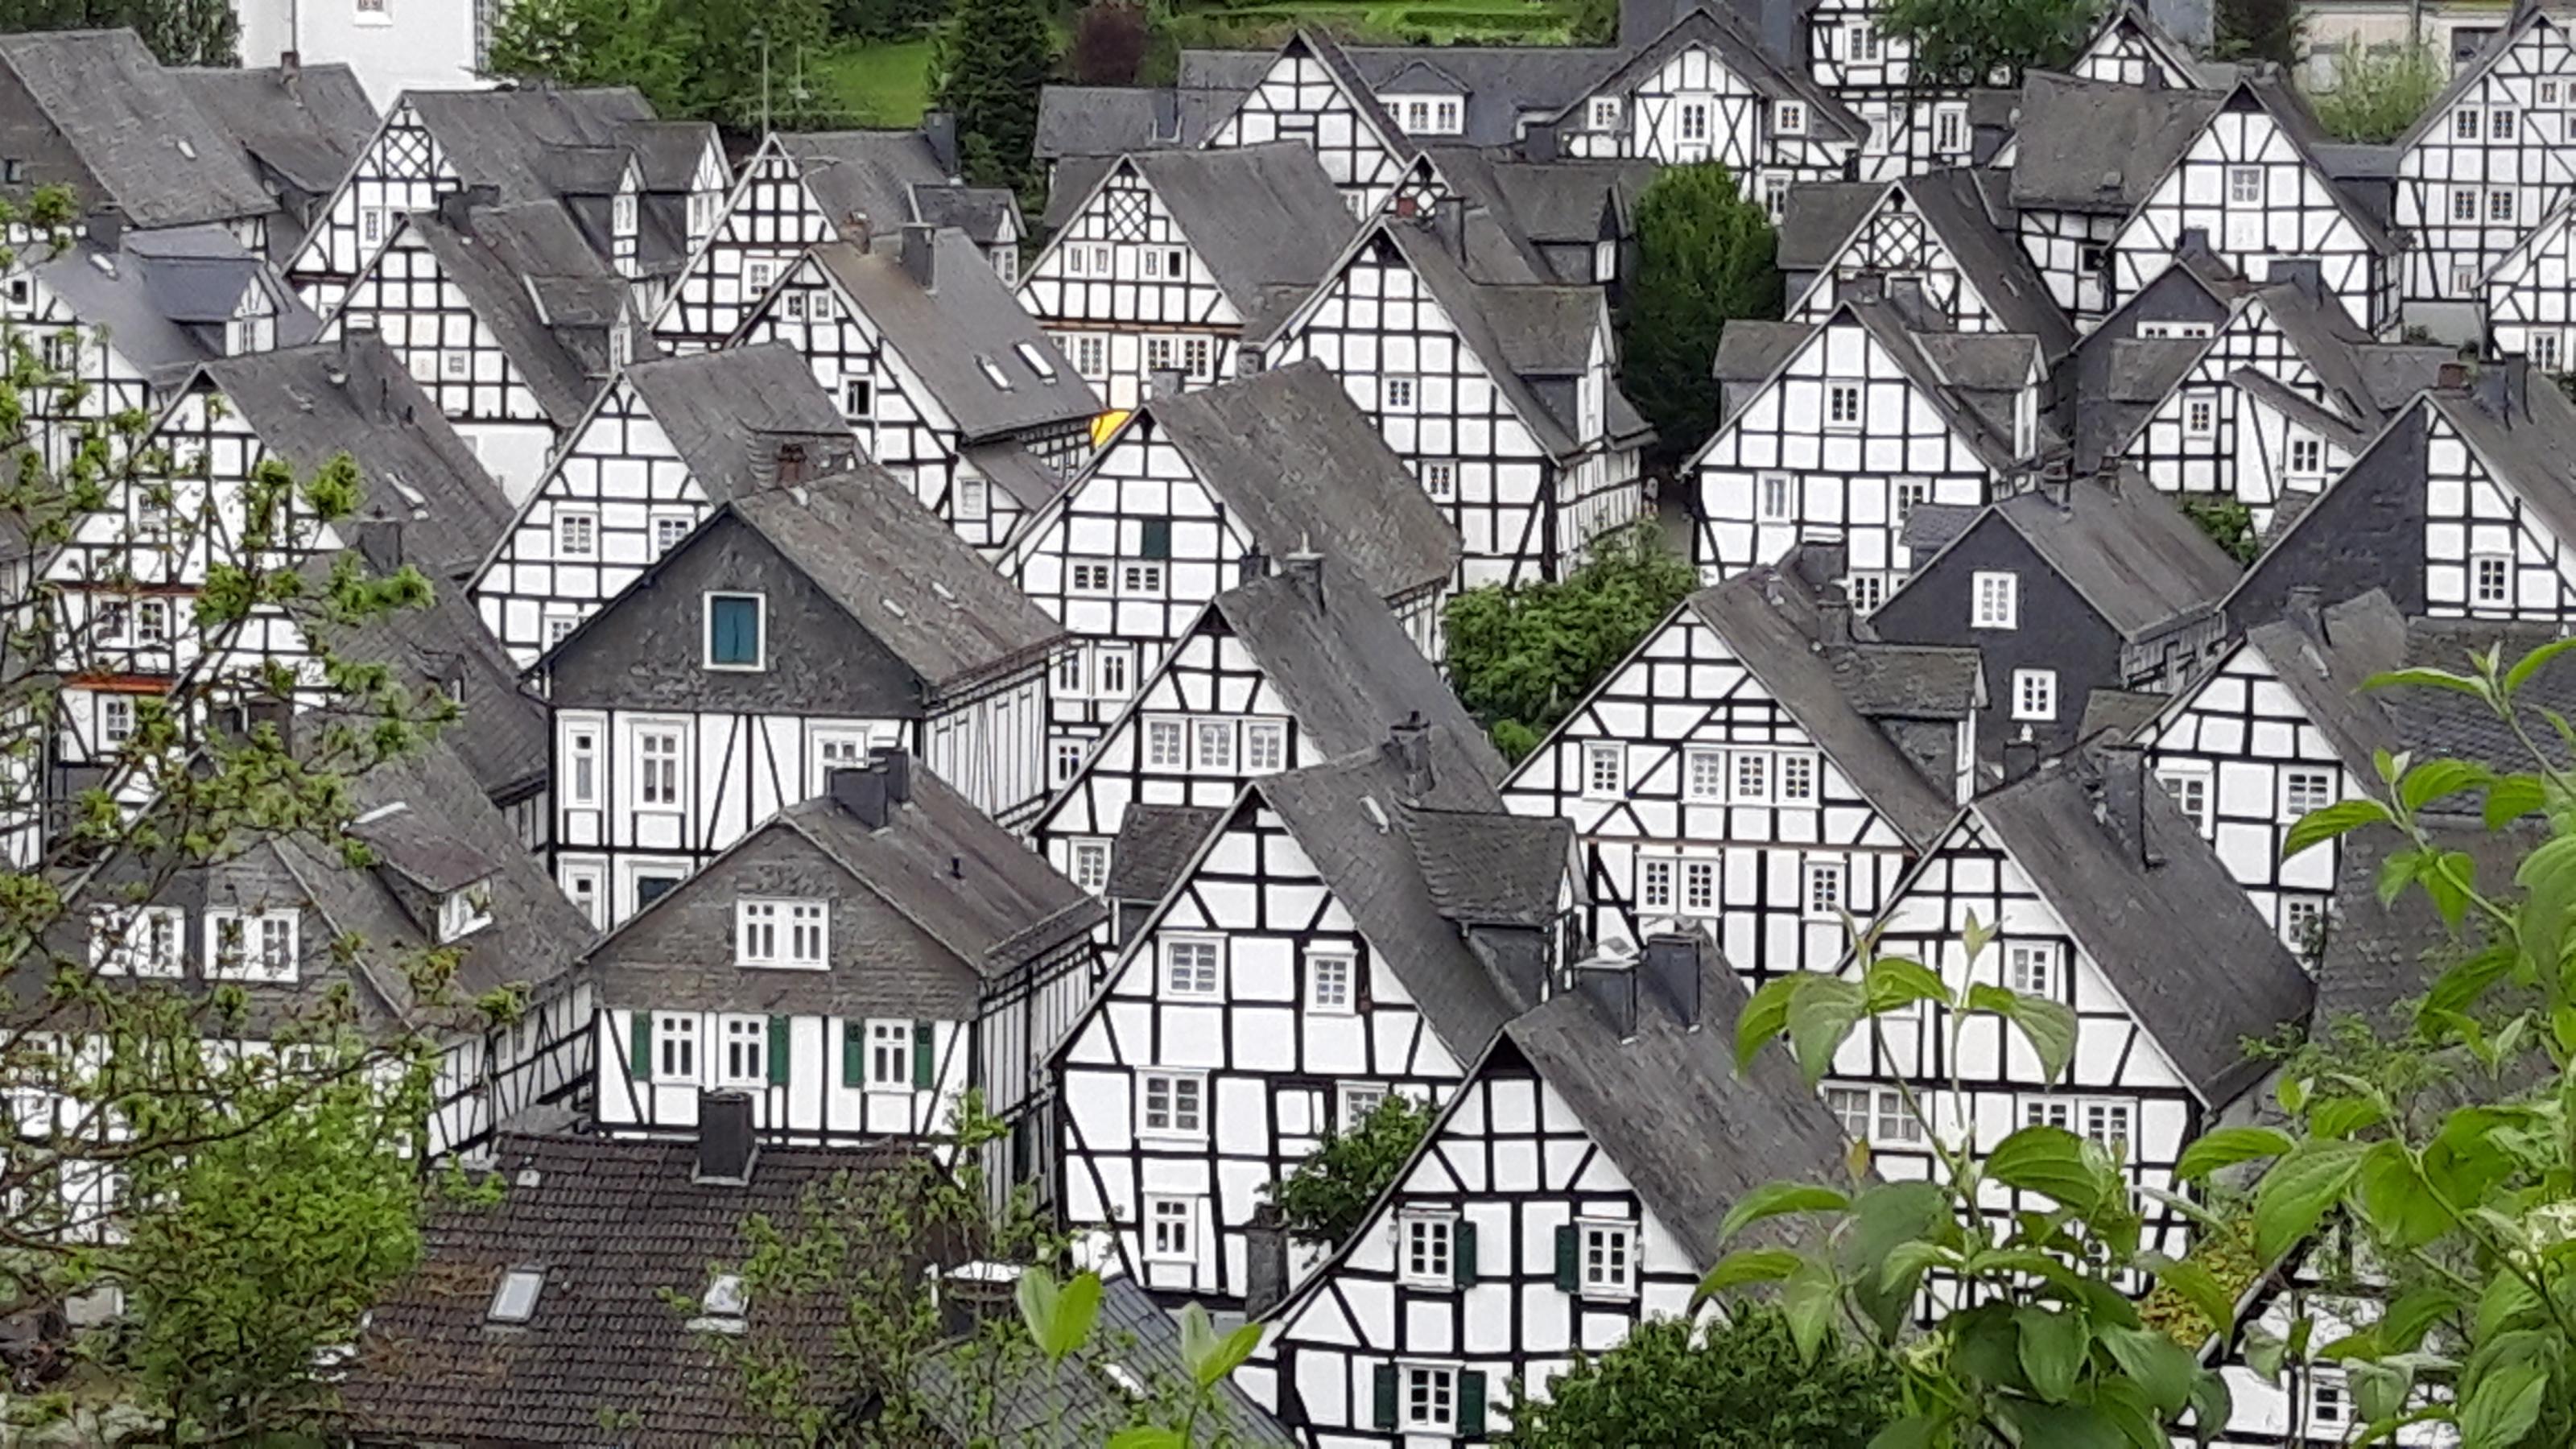 Im Zentrum Freudenbergs drängt sich ein hübsches Fachwerkhaus ans andere.